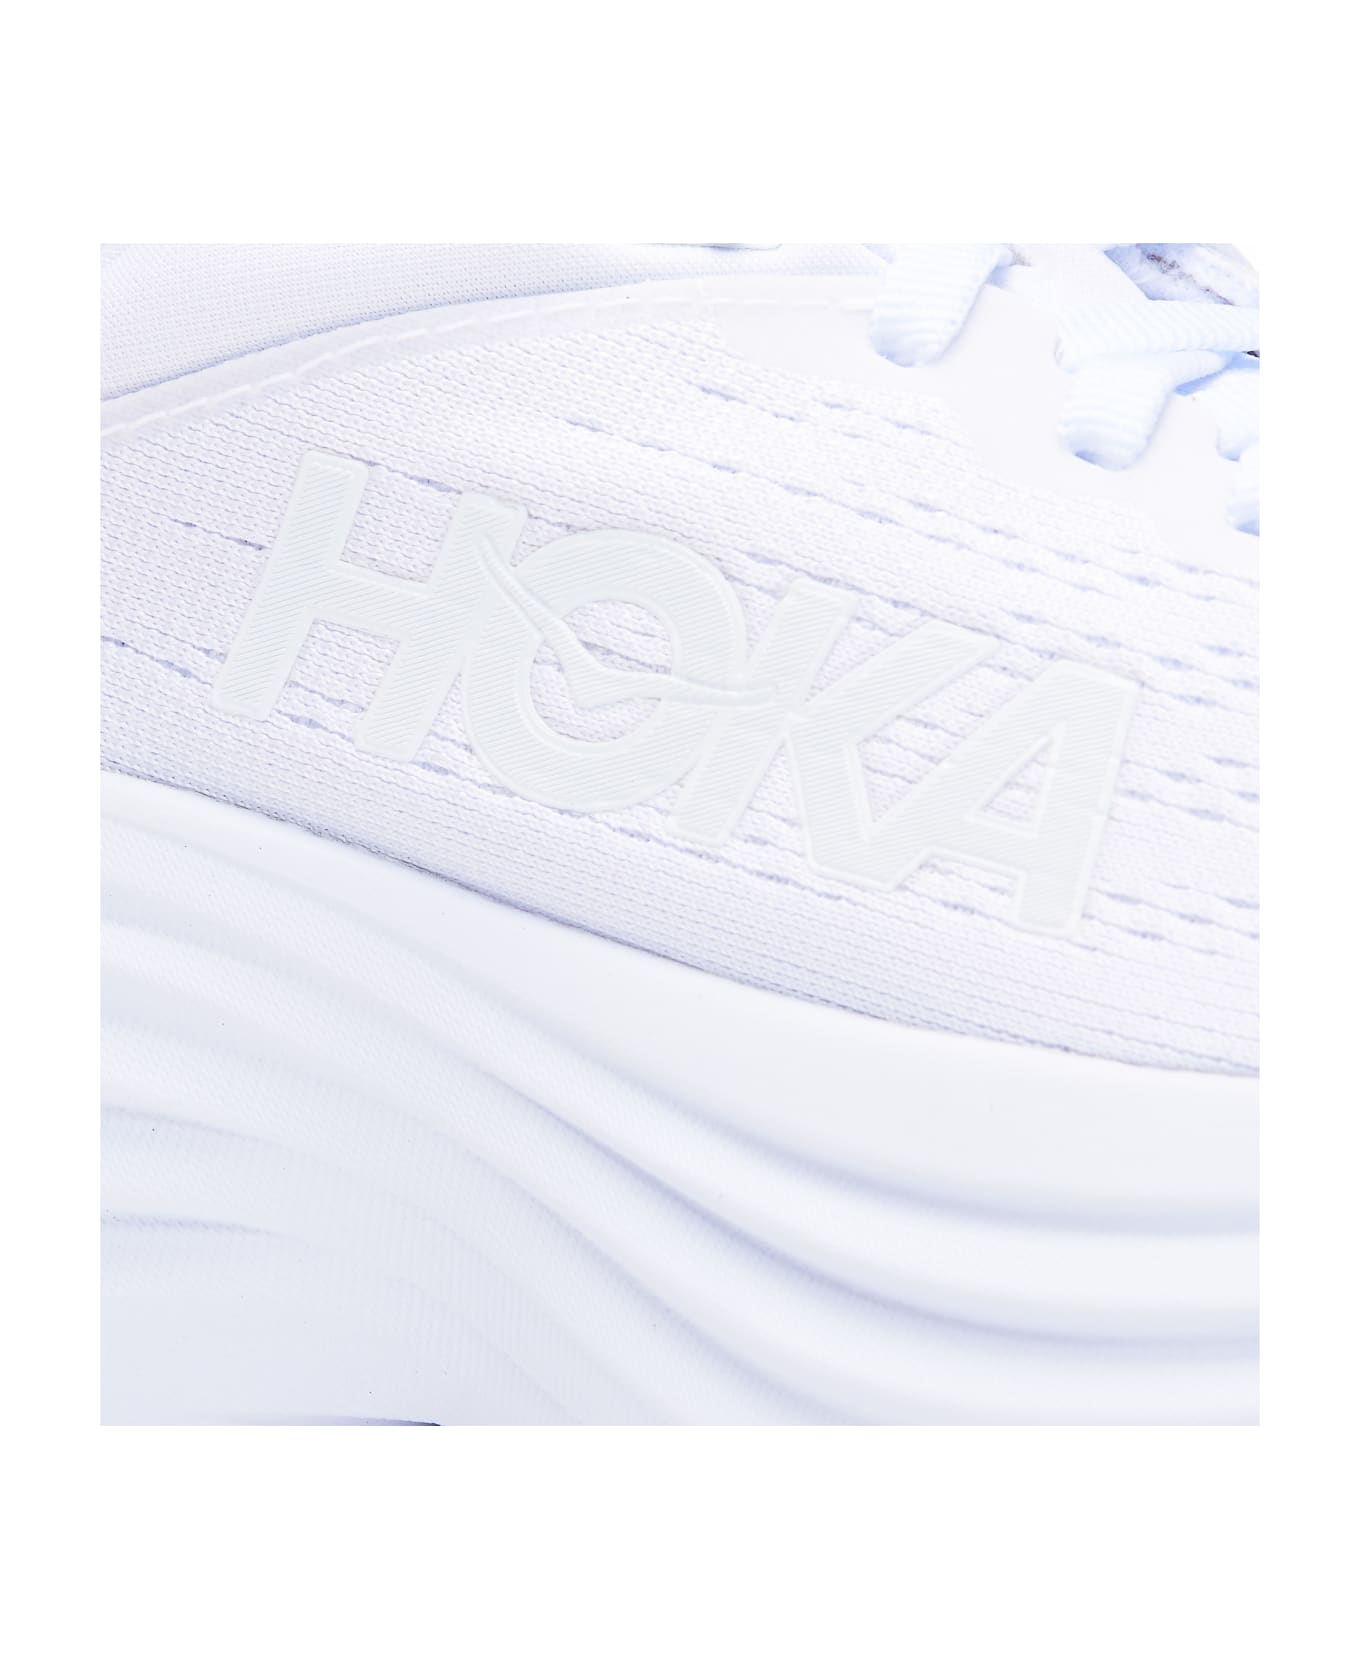 Hoka Bondi 8 Sneakers - WHITE/WHITE ウェッジシューズ